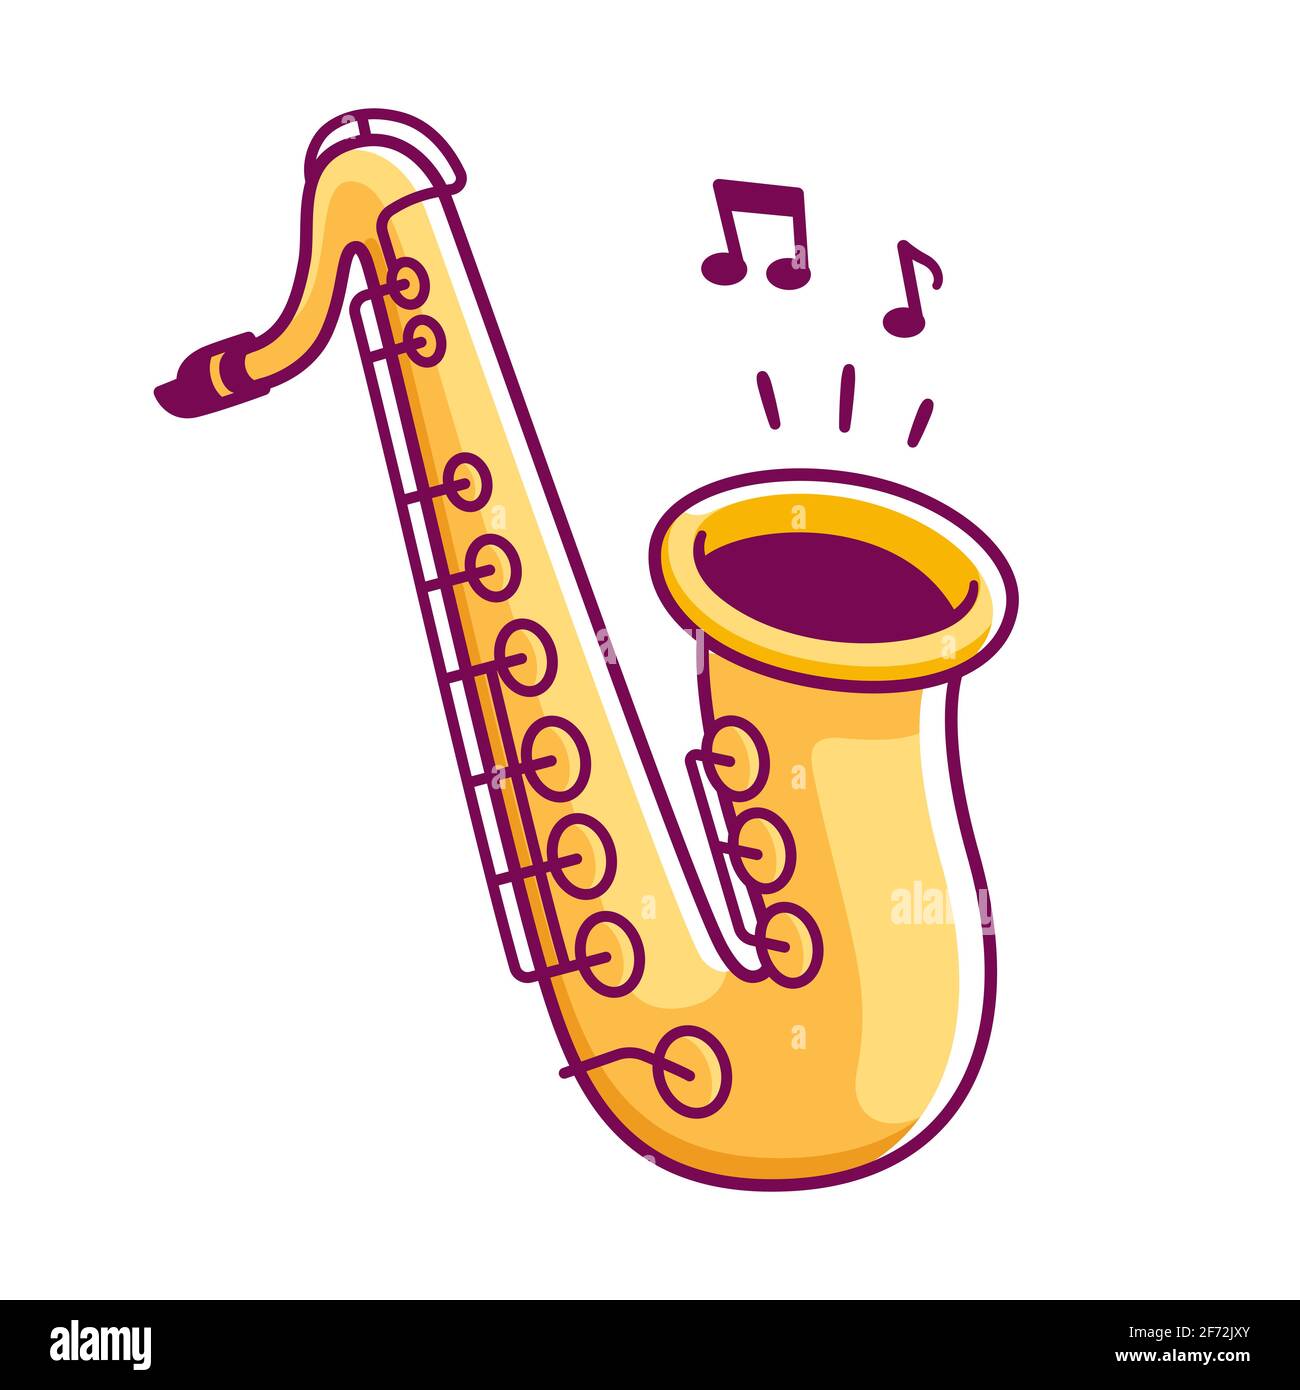 Dibujos Animados De Saxofón Fotos e Imágenes de stock - Alamy